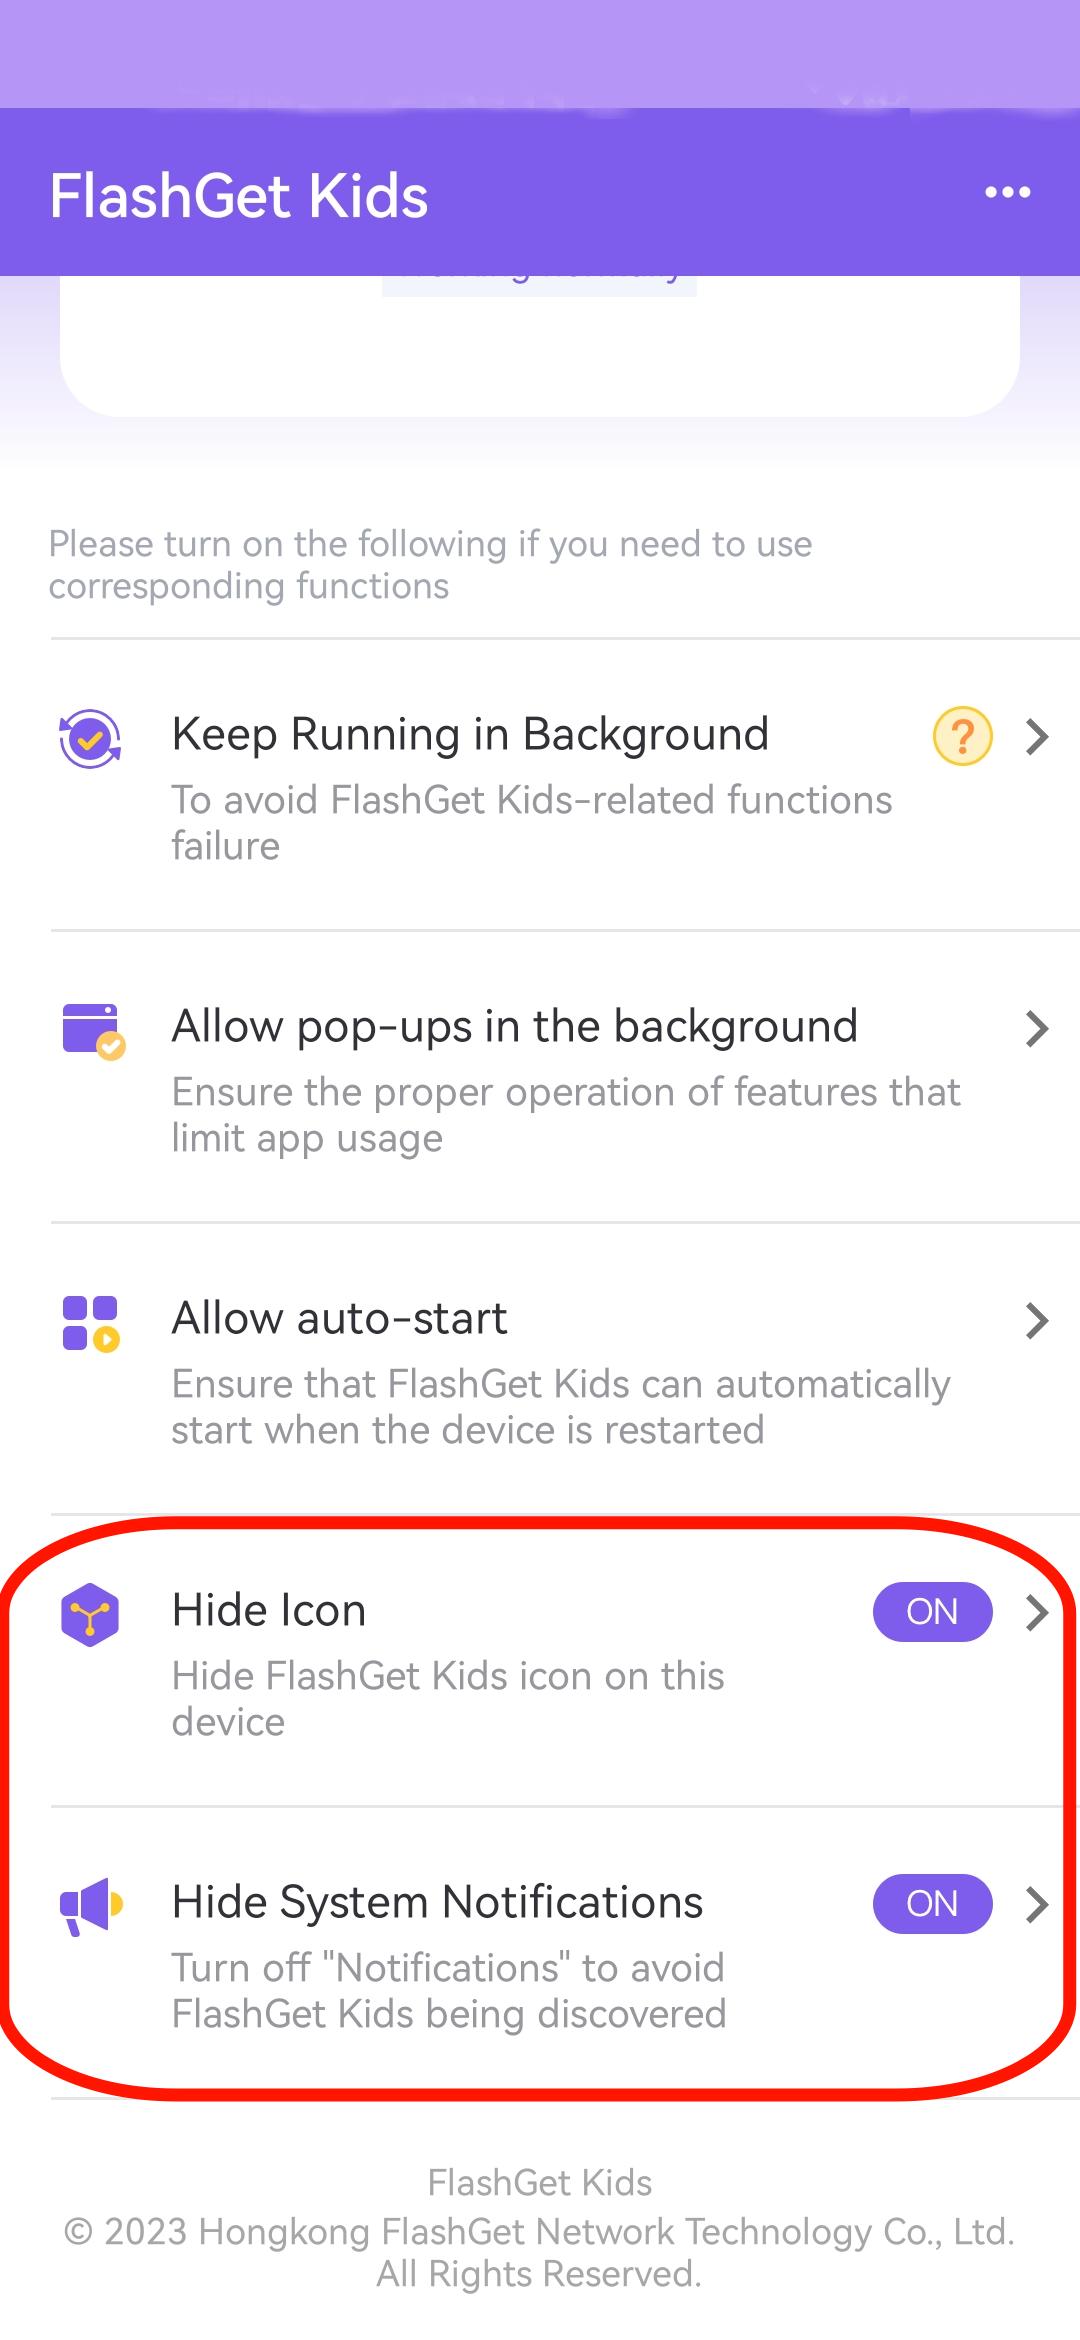 Ocultar ícone e ocultar notificação do sistema no FlashGet Kids